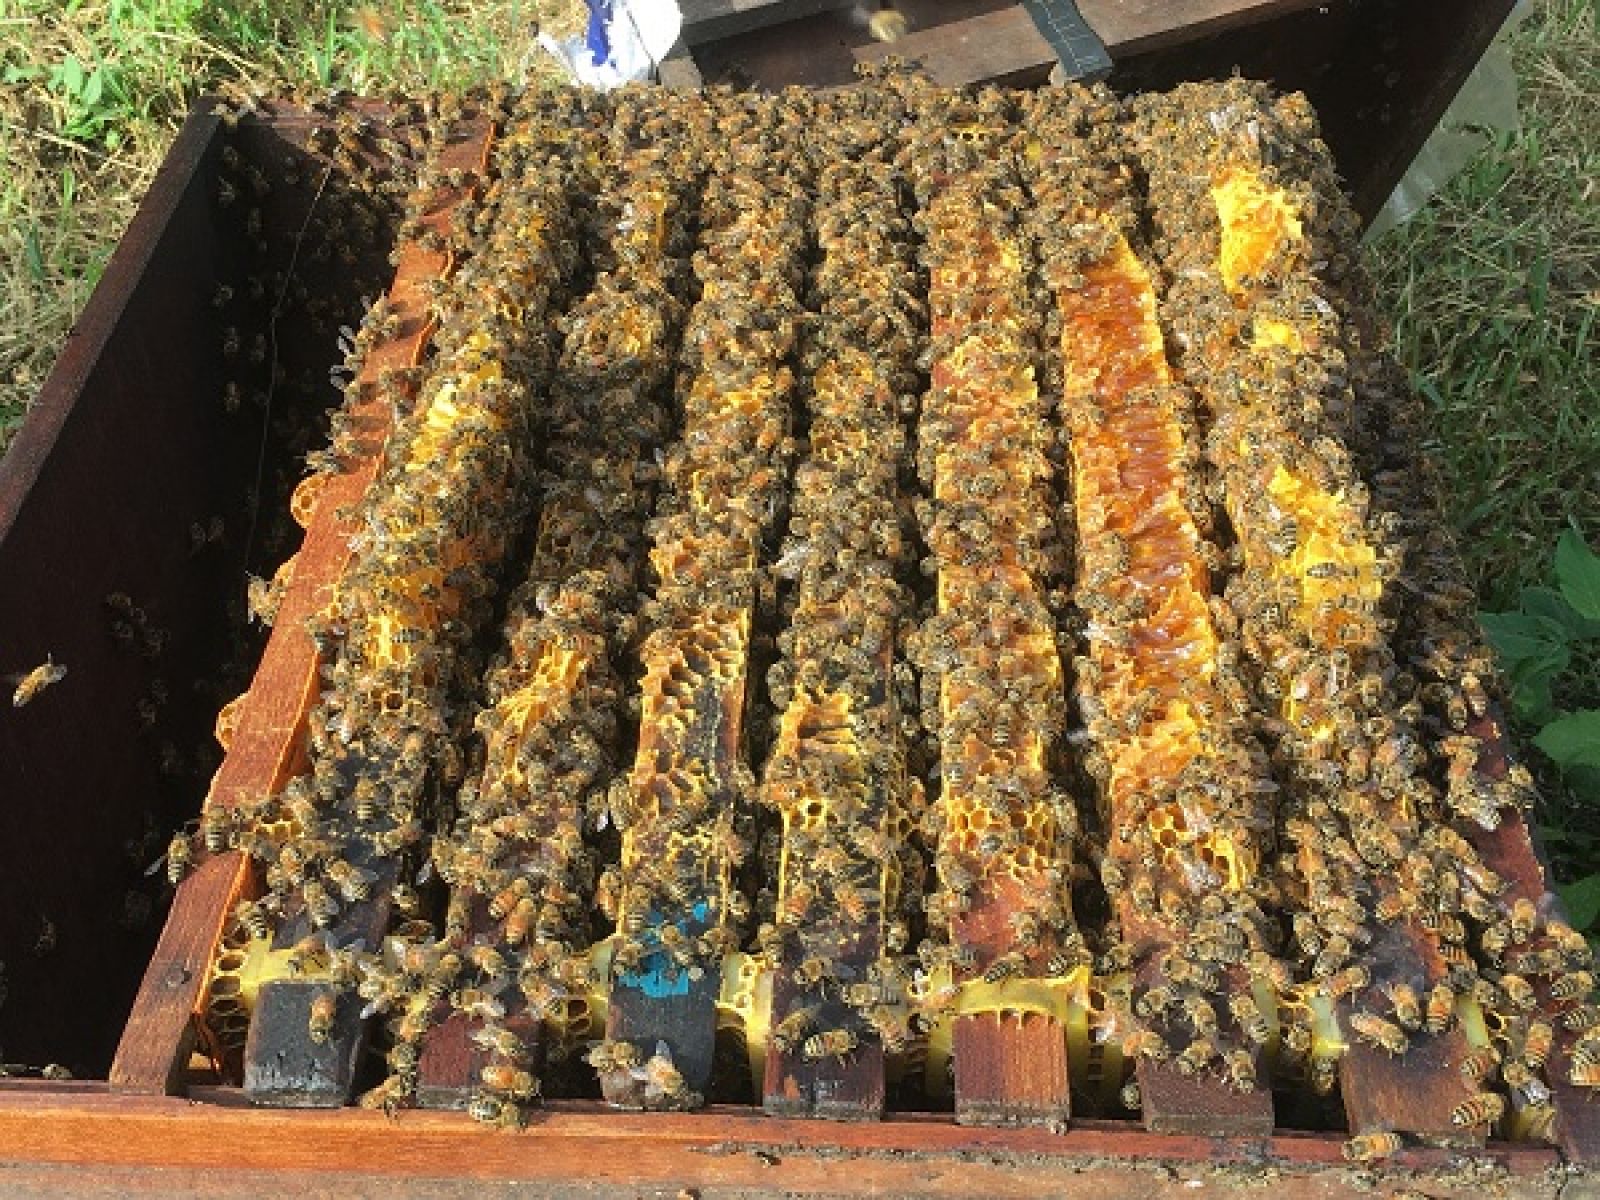 Nhờ cách chăm sóc tốt, đàn ong mật của anh Phong phát triển rất đều.